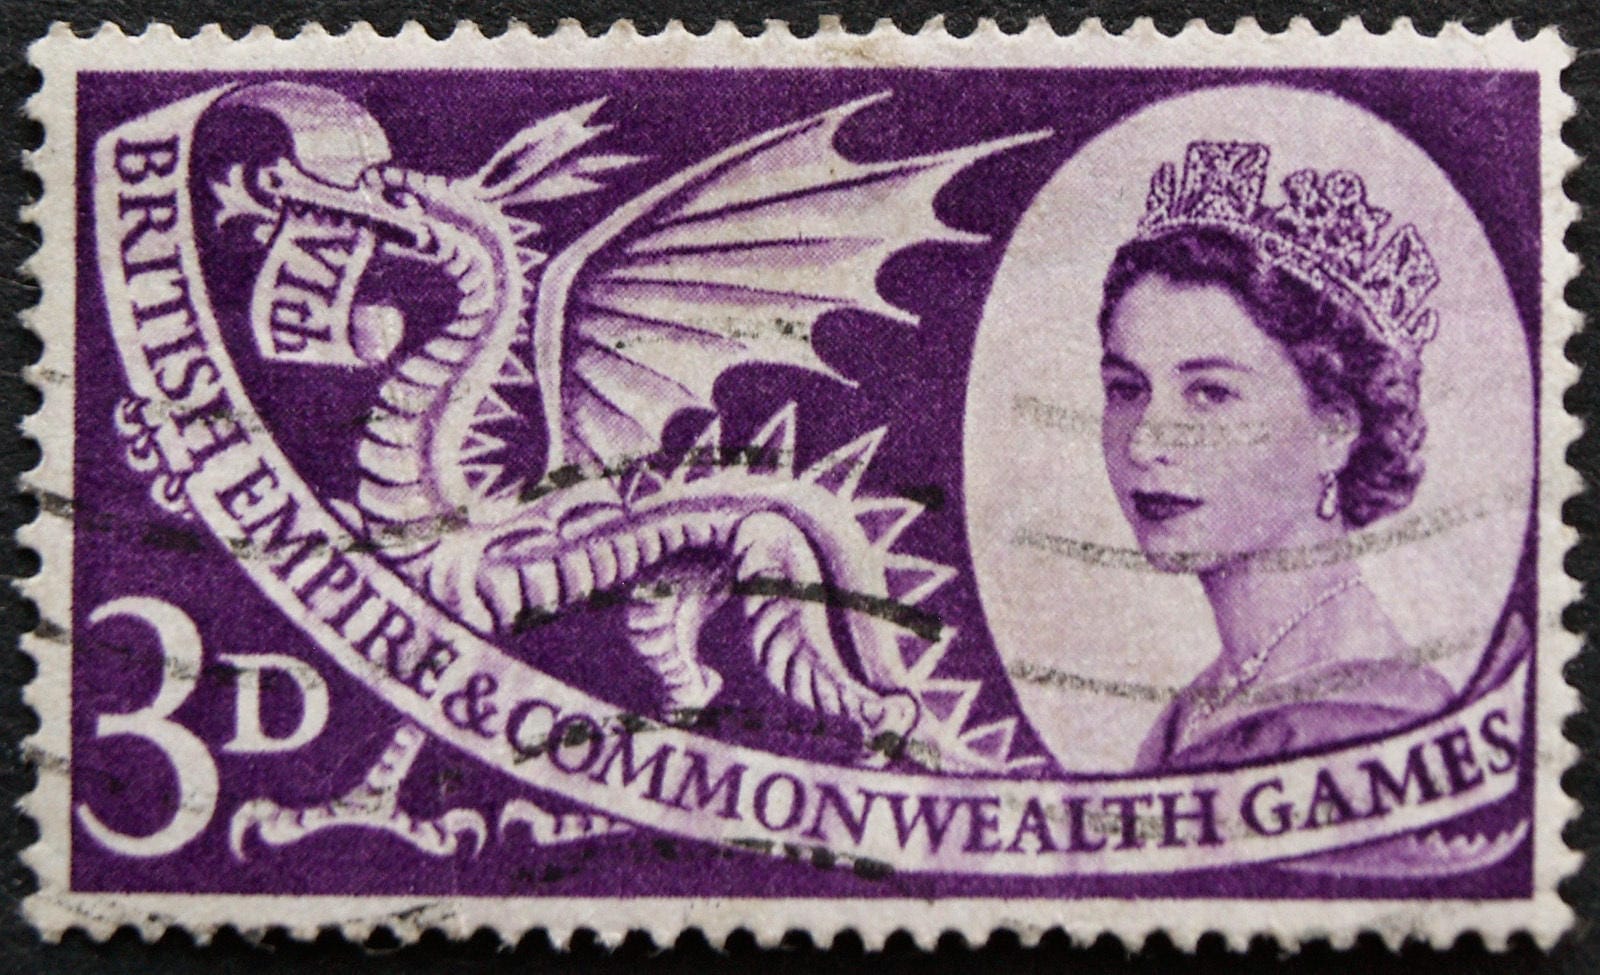 Briefmarke mit Bild der Königin: Die Ehre der Queen zu verletzen, ist selbst beim Aufkleben von Briefmarken verboten.